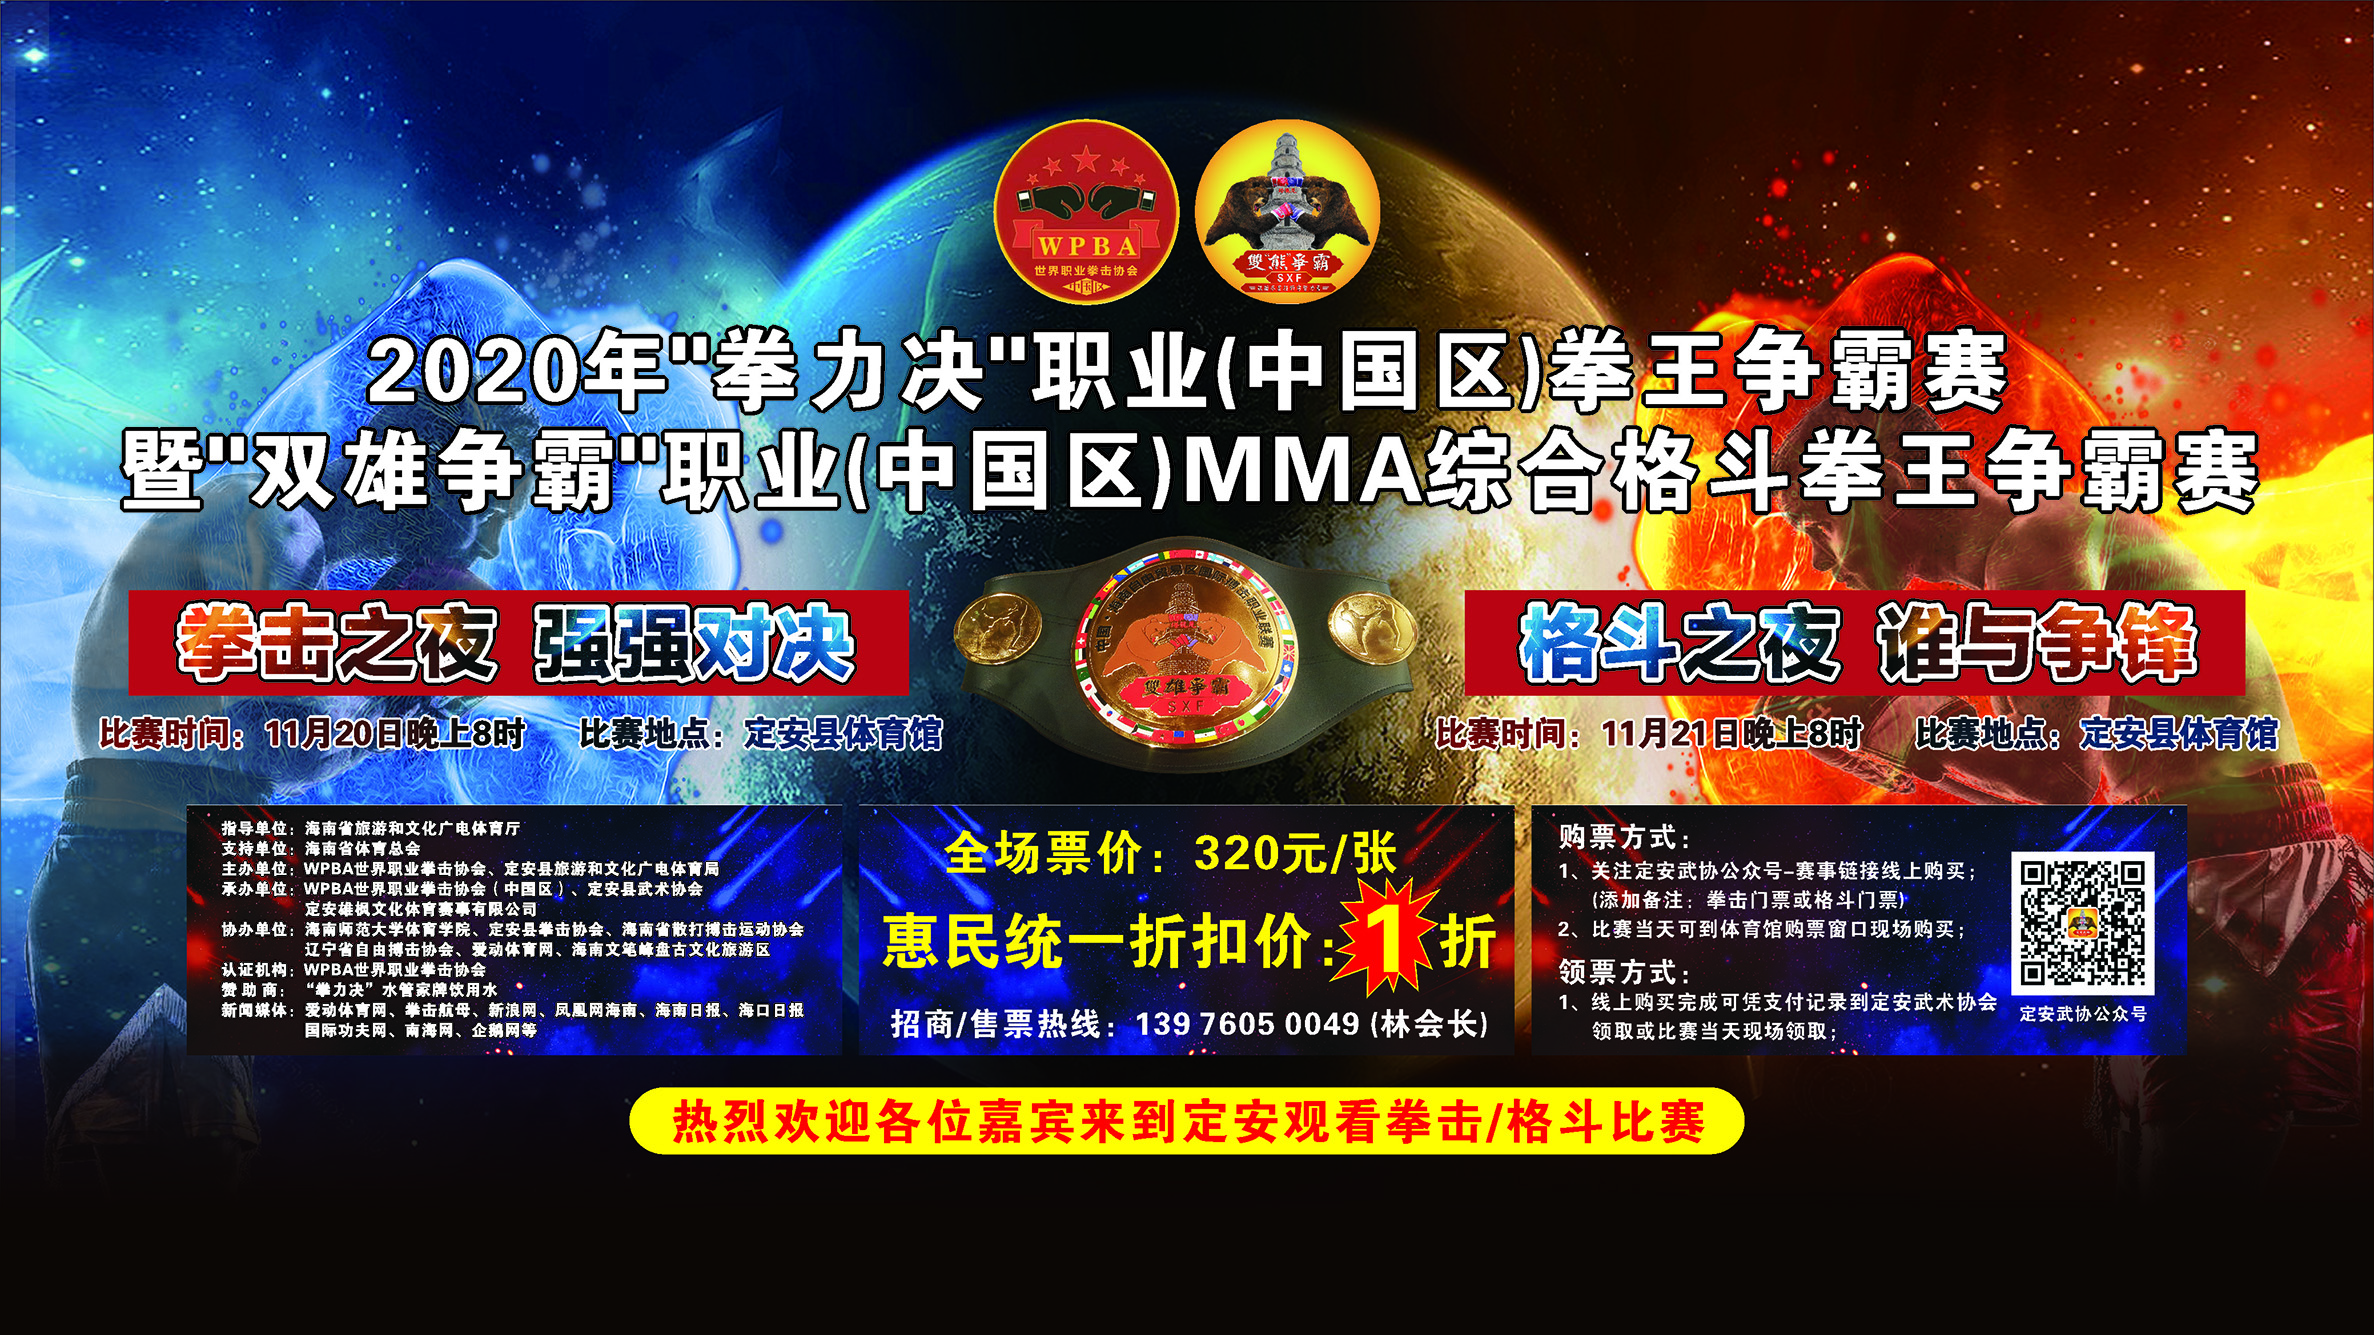 2020年“双雄争霸”职业（中国区）MMA综合格斗拳王争霸赛 11月21日